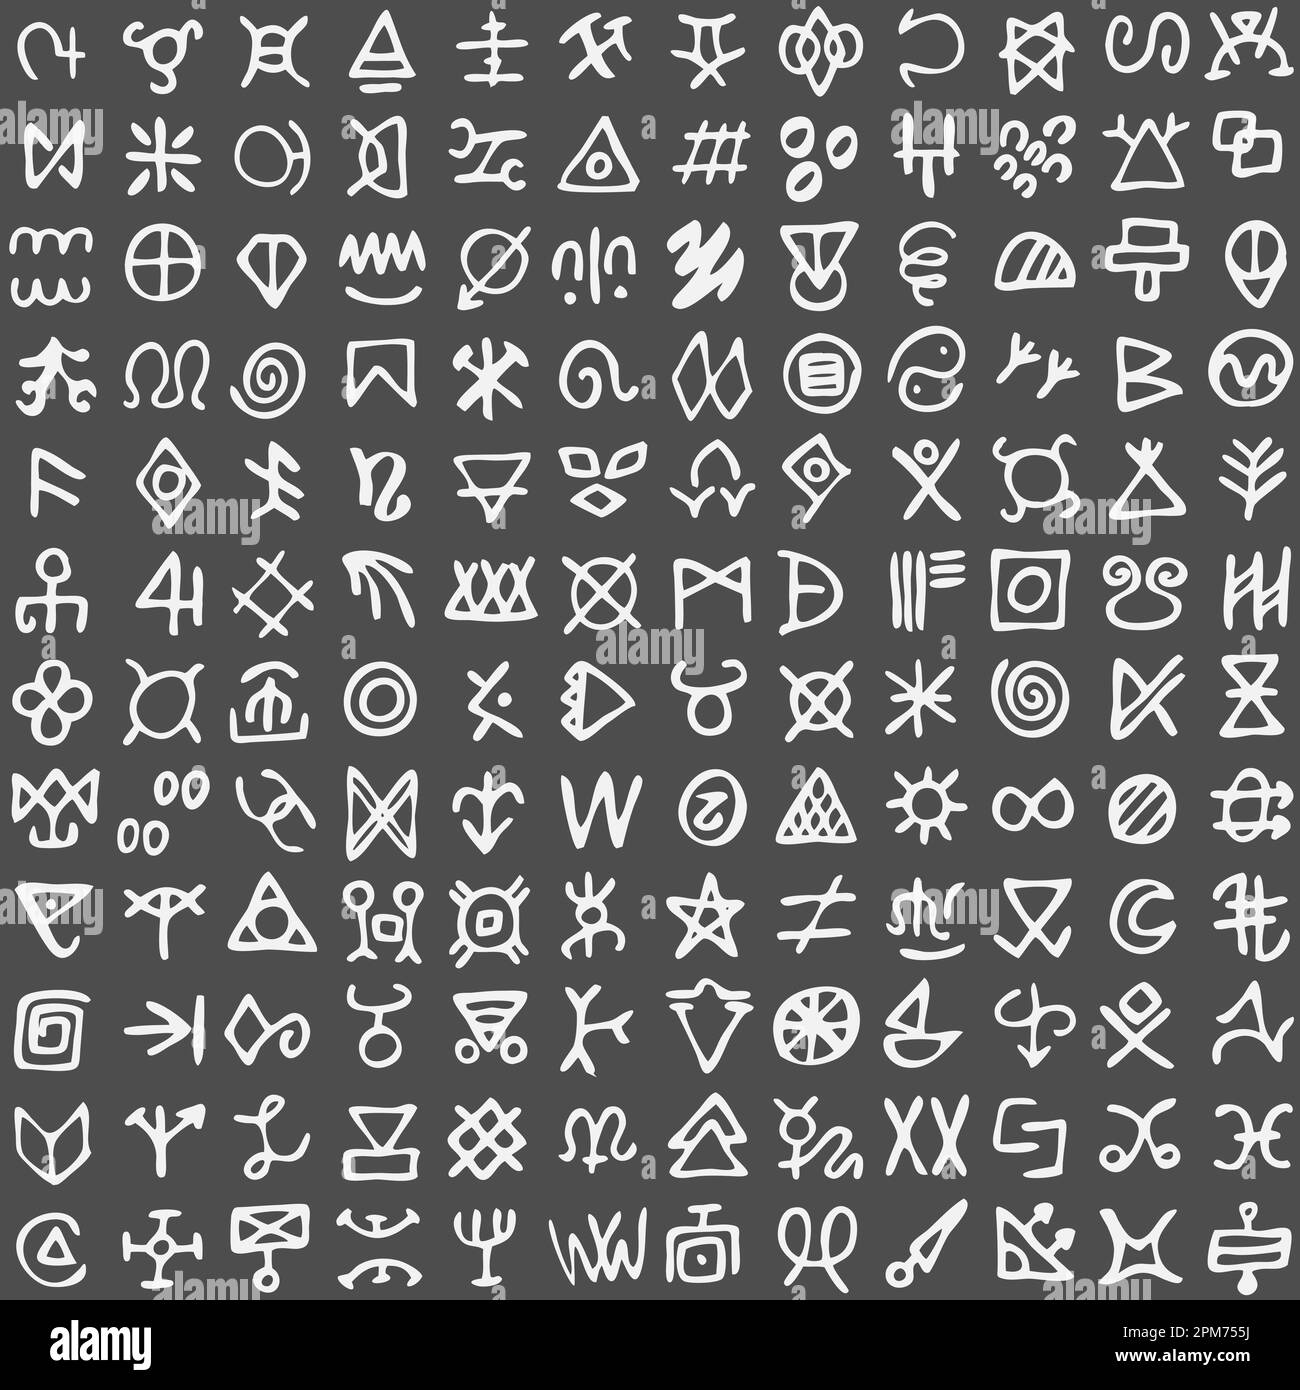 Grille de symboles de runes. Symboles occultes anciens, vikings comme des lettres sur blanc Illustration de Vecteur